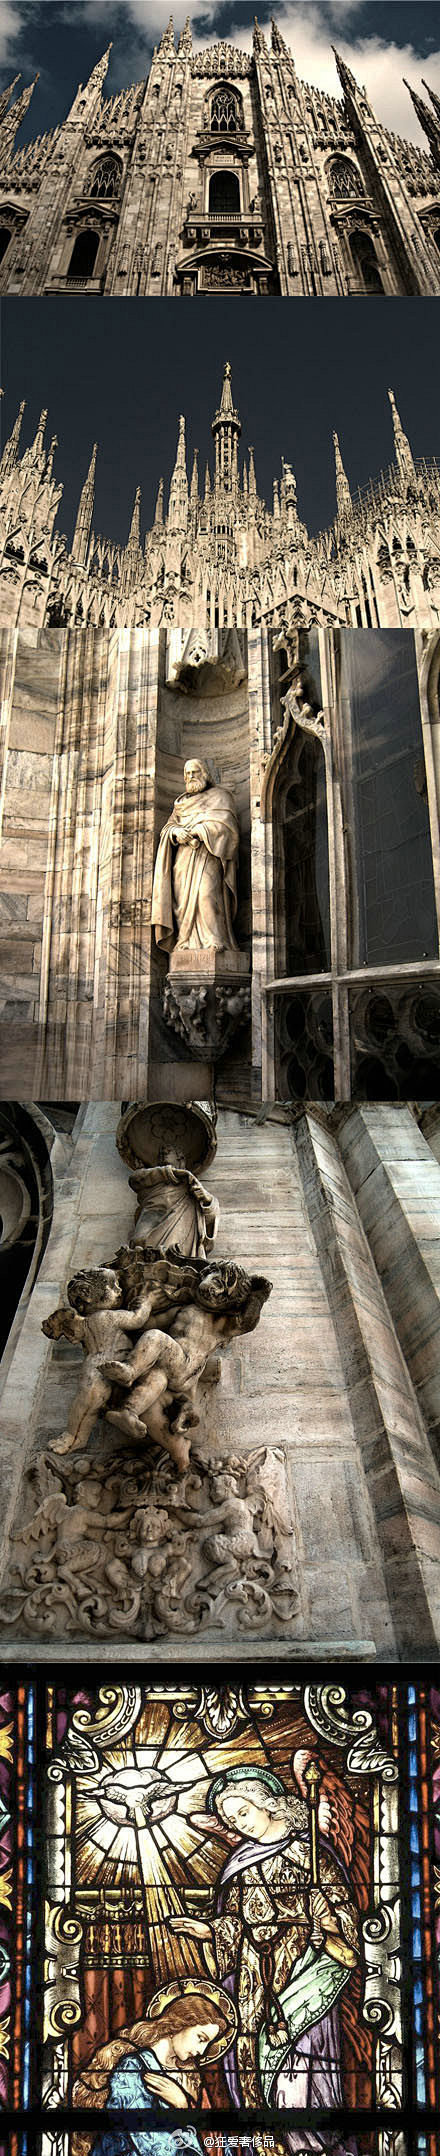 【意大利.米兰大教堂】典型的巴洛克式风格...